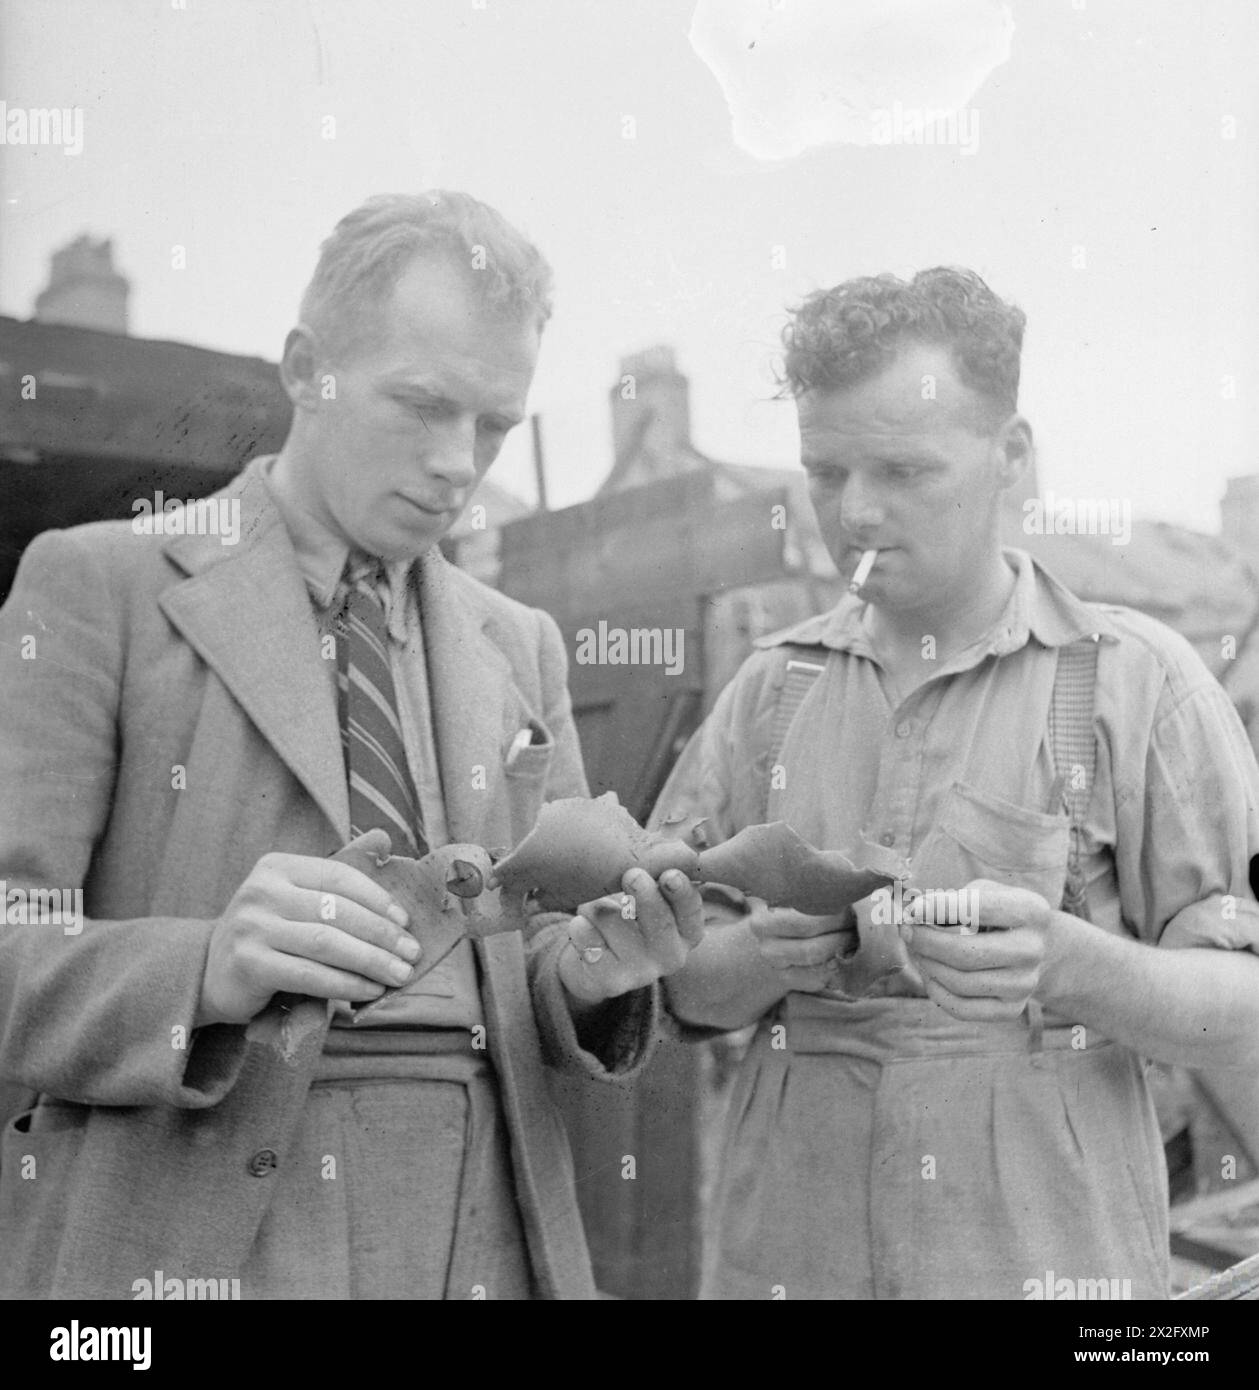 CAMPO DI LONDRA DELLA SQUADRA DI RIPARAZIONE BLITZ: LA VITA DI TUTTI I GIORNI CON LE SQUADRE DI RIPARAZIONE BLITZ, LONDRA, INGHILTERRA, Regno Unito, 1944 - il generale Foreman J Wigley (di Darlington) e il CAPOSQUADRA H Uttley esaminano un pezzo dei resti di una bomba volante V1. Fanno parte di una squadra di costruttori che sono venuti a Londra da varie parti del paese per riparare i danni causati da queste bombe Foto Stock